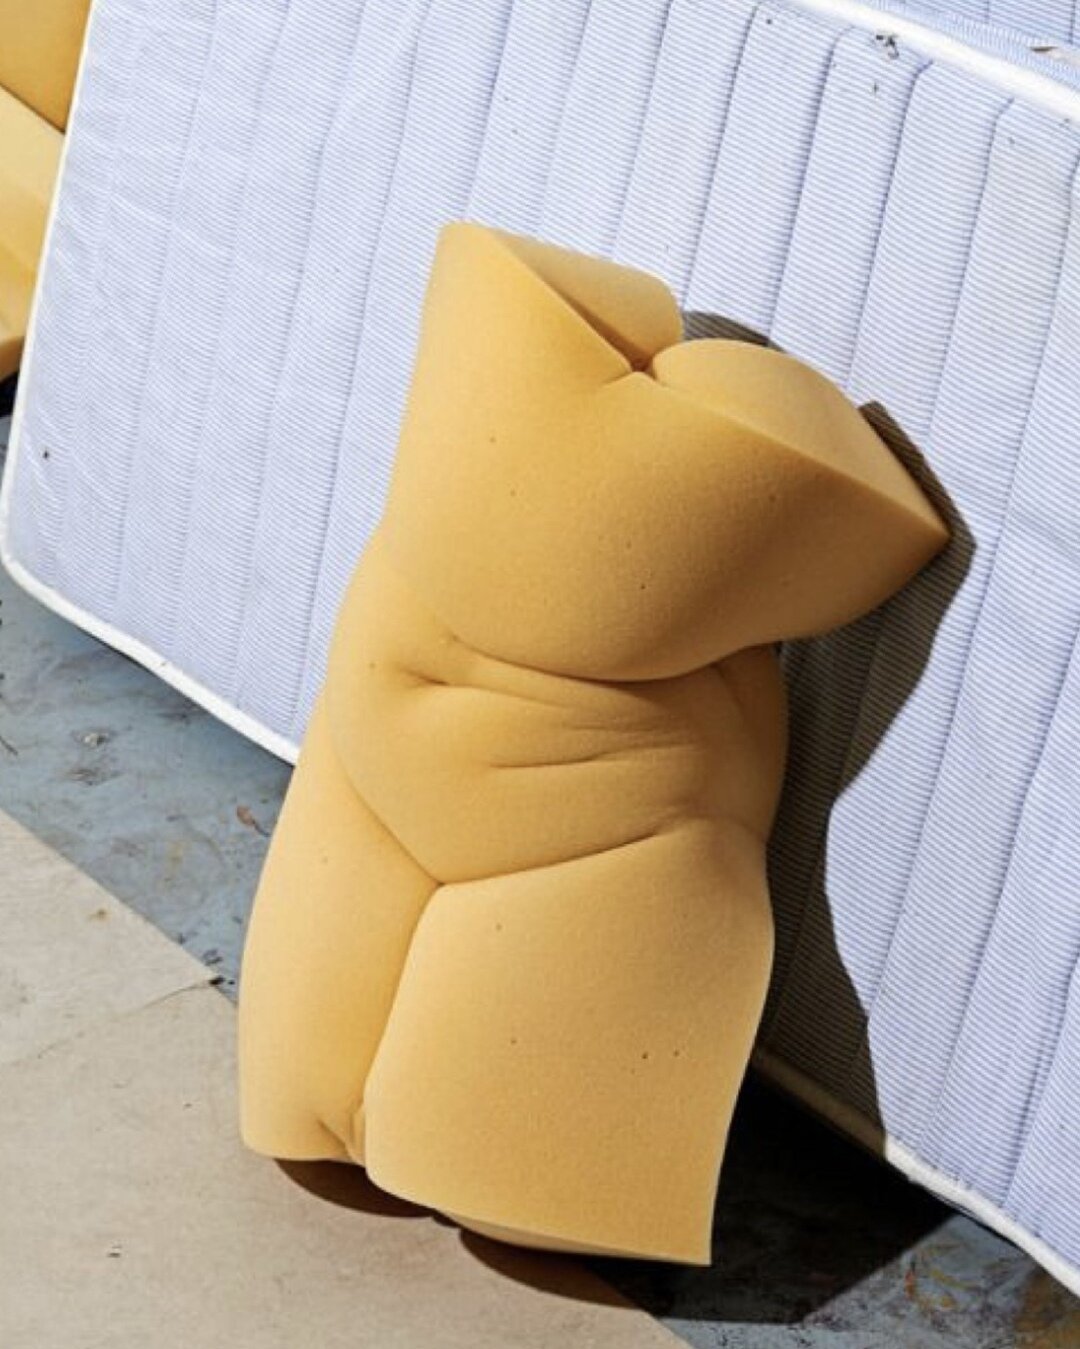 Foam Nudes by Matthieu Lavanchy @matthieulavanchy